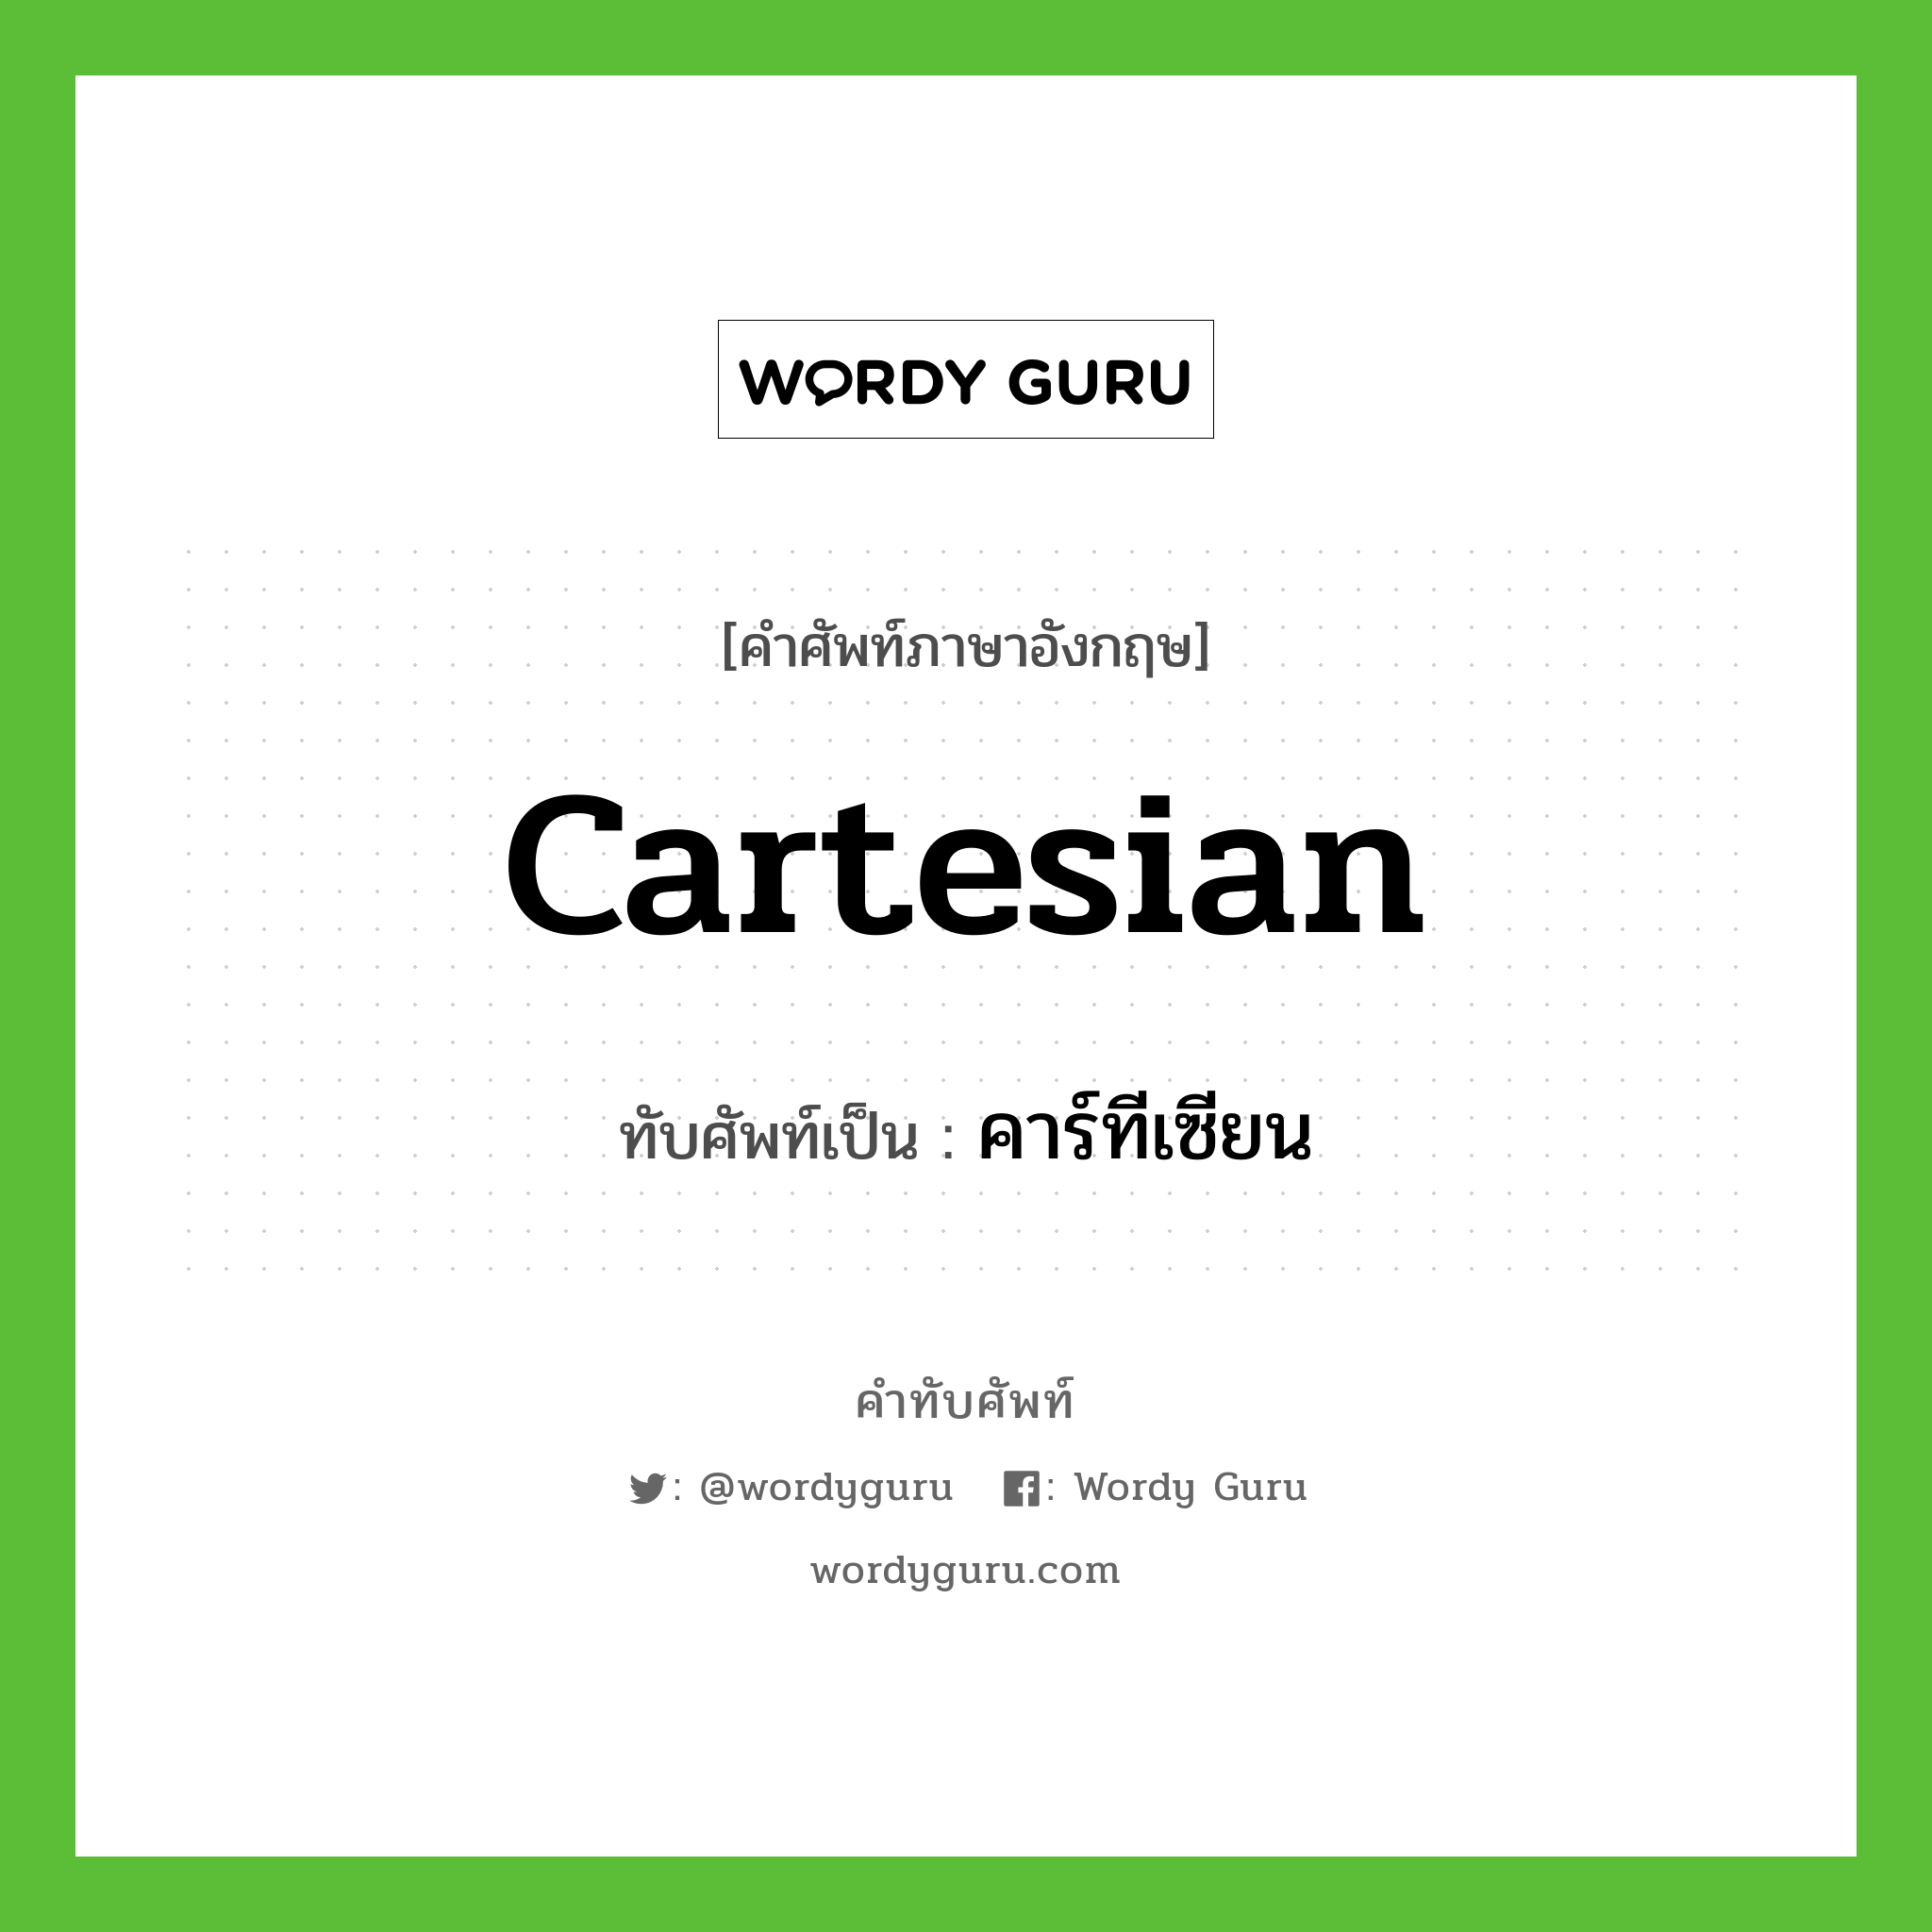 Cartesian เขียนเป็นคำไทยว่าอะไร?, คำศัพท์ภาษาอังกฤษ Cartesian ทับศัพท์เป็น คาร์ทีเซียน